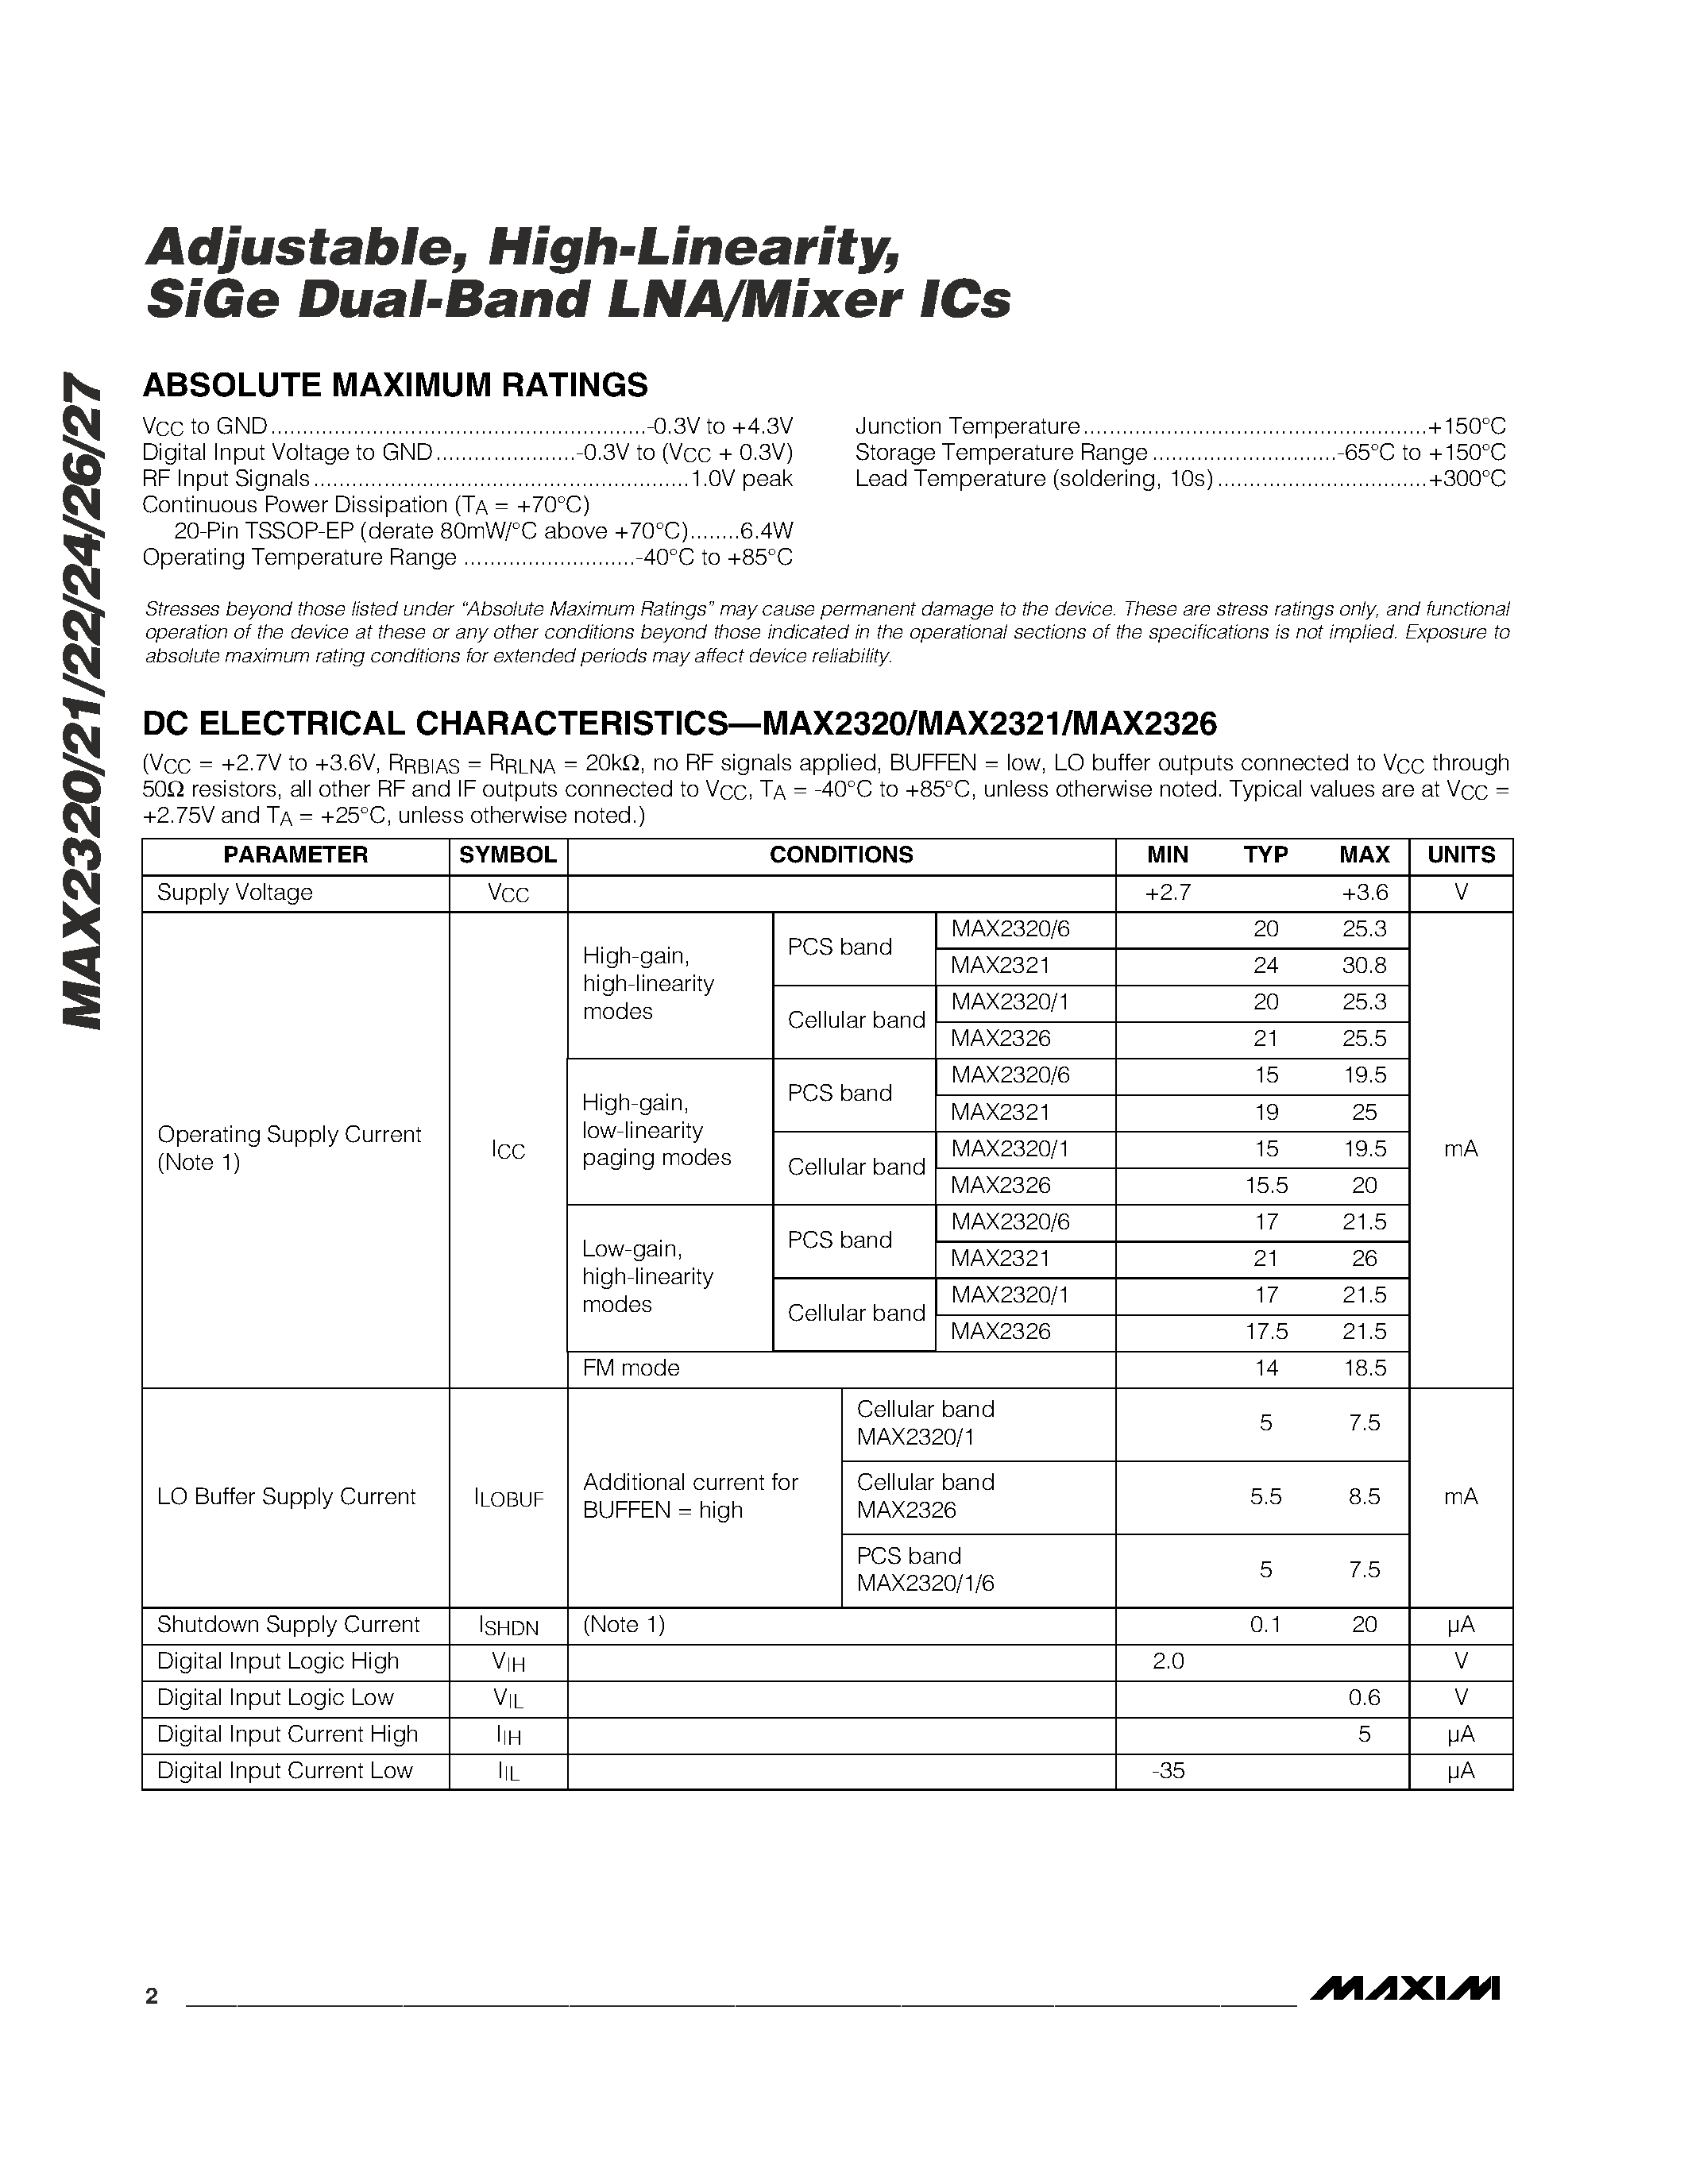 Даташит MAX2321EUP - Adjustable / High-Linearity / SiGe Dual-Band LNA/Mixer ICs страница 2